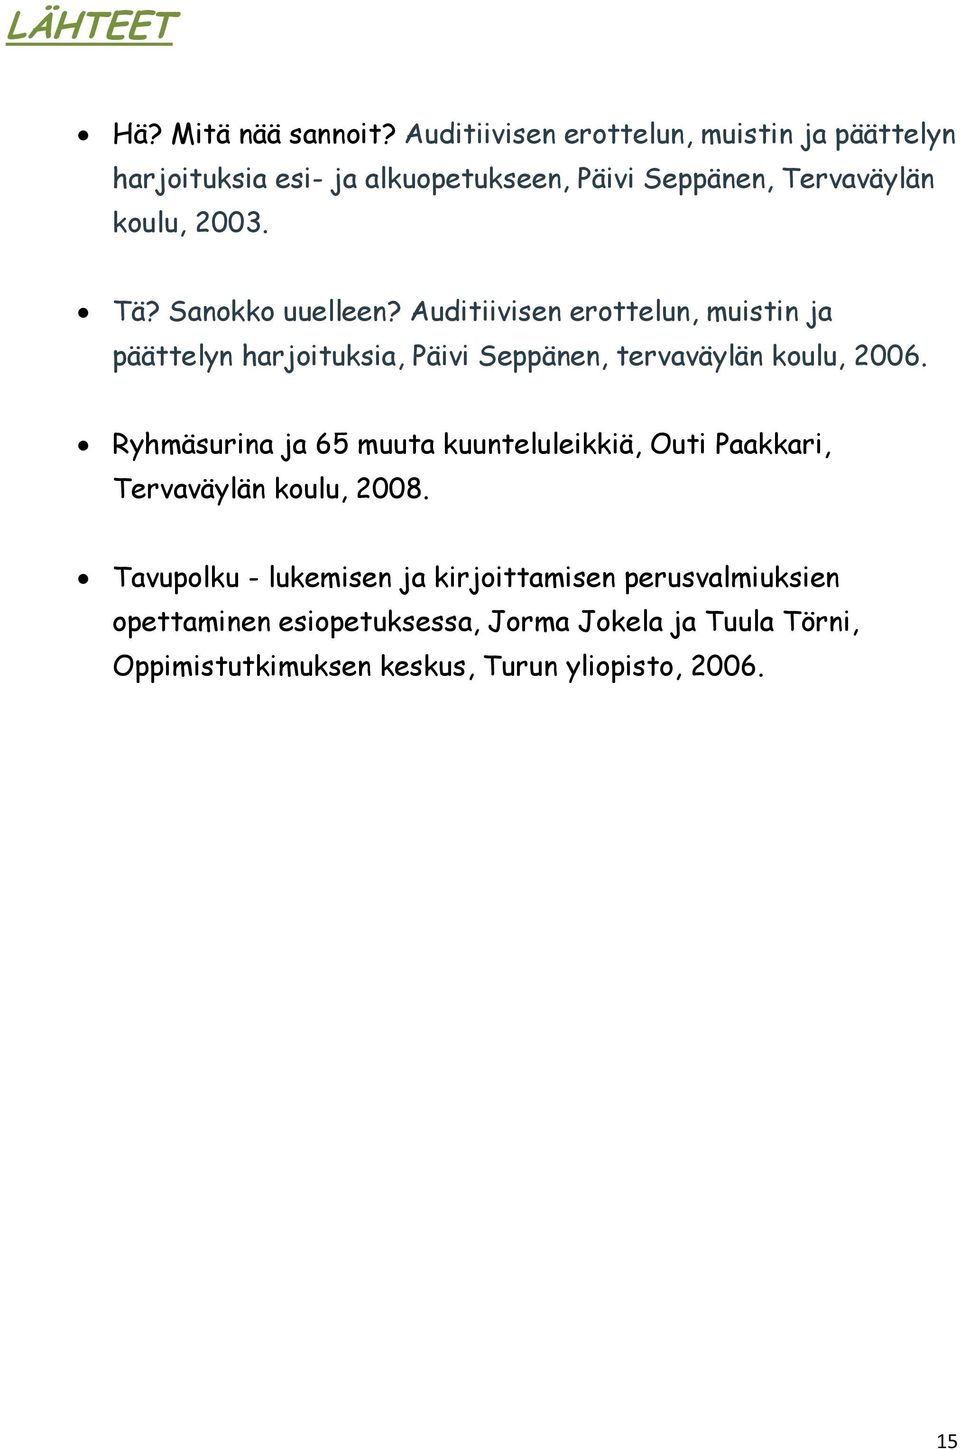 Sanokko uuelleen? Auditiivisen erottelun, muistin ja päättelyn harjoituksia, Päivi Seppänen, tervaväylän koulu, 2006.